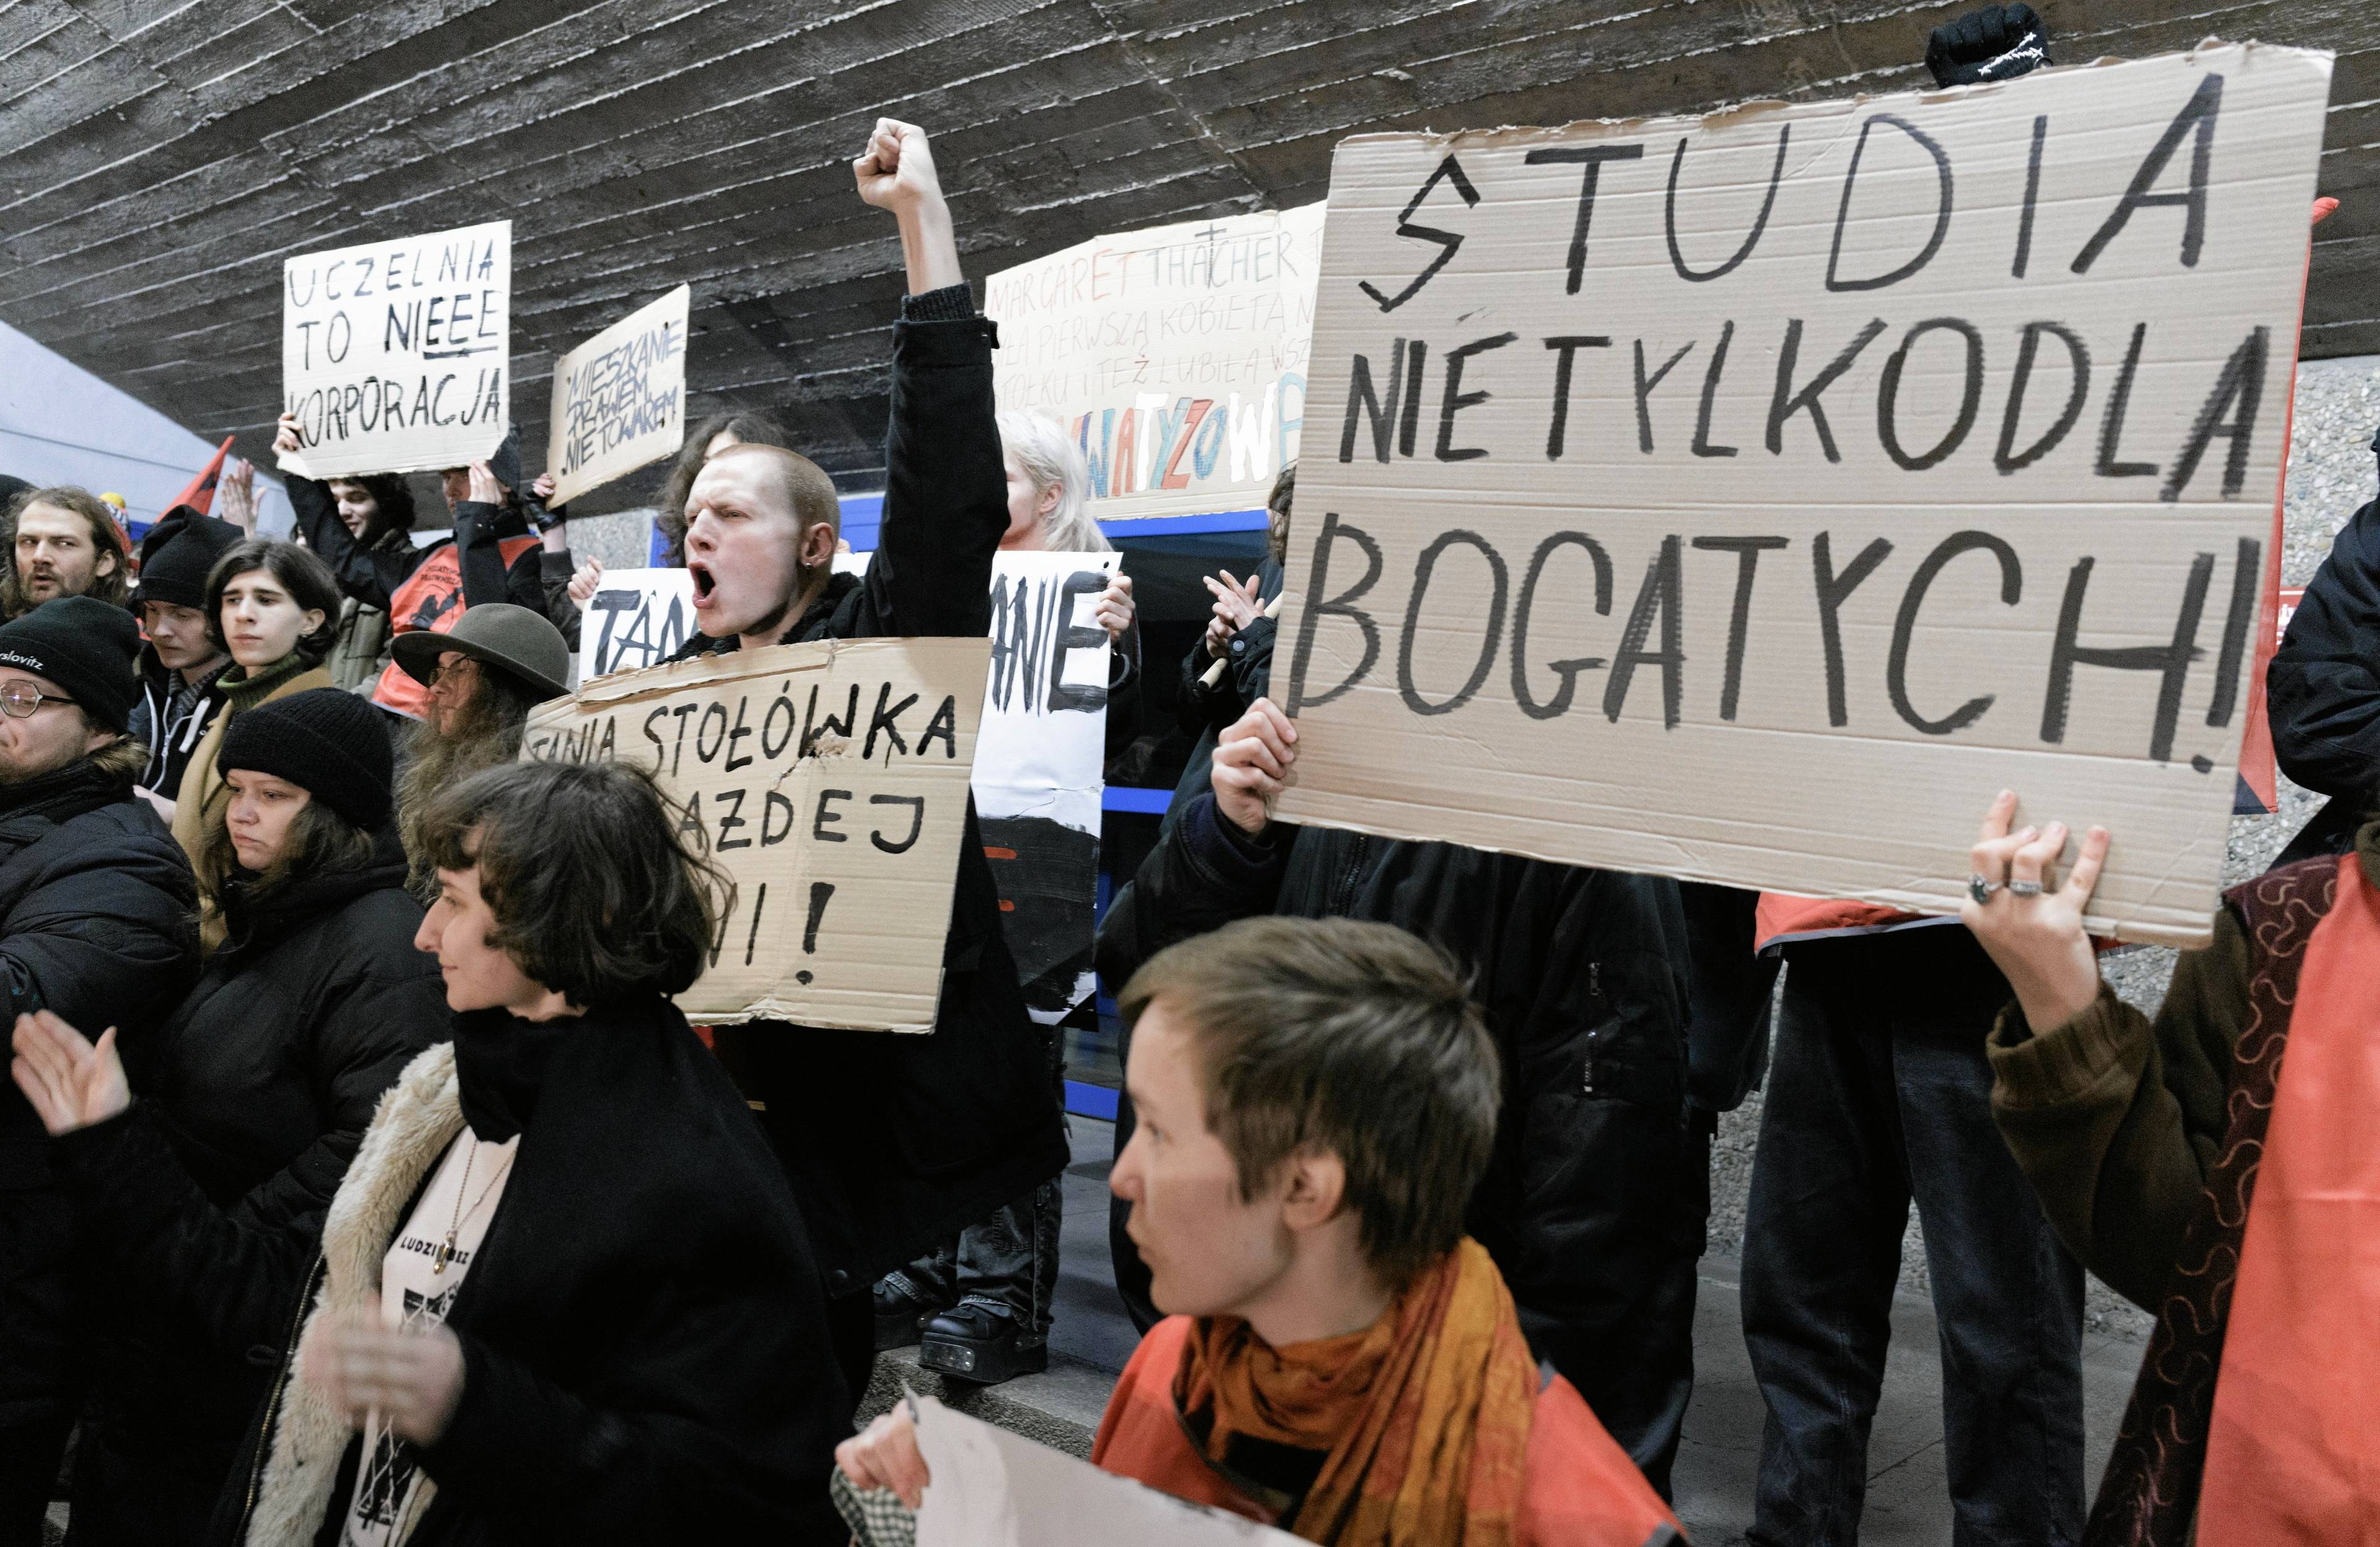 studenci protestujący w Poznaniu. transparent "Studia nie tylko dla bogatych"